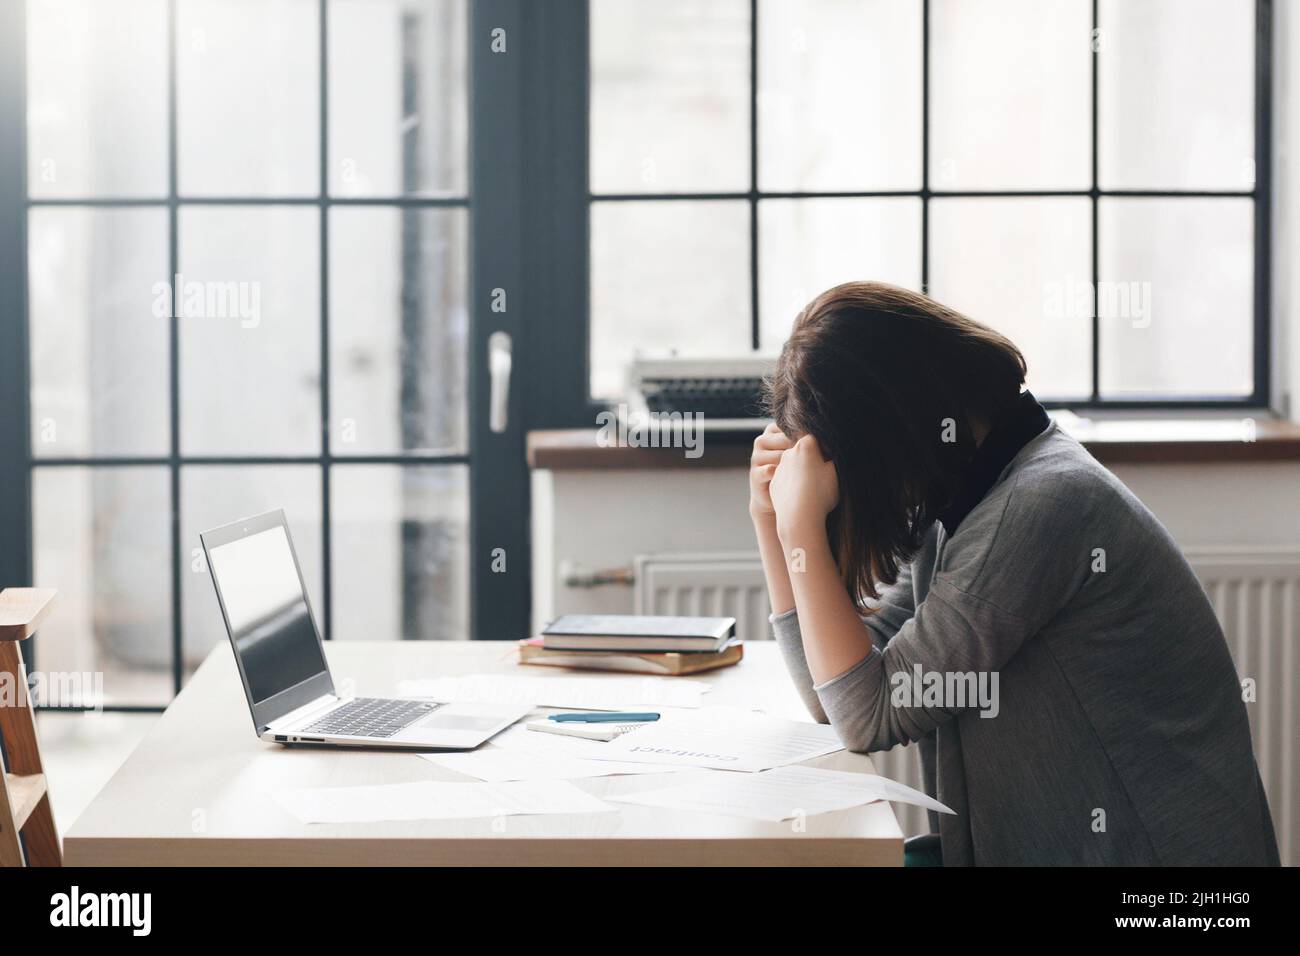 Femme entrepreneur assise au bureau et semble confondue avec un ordinateur portable sur le bureau. Problèmes d'affaires, crise, faillite concept Banque D'Images